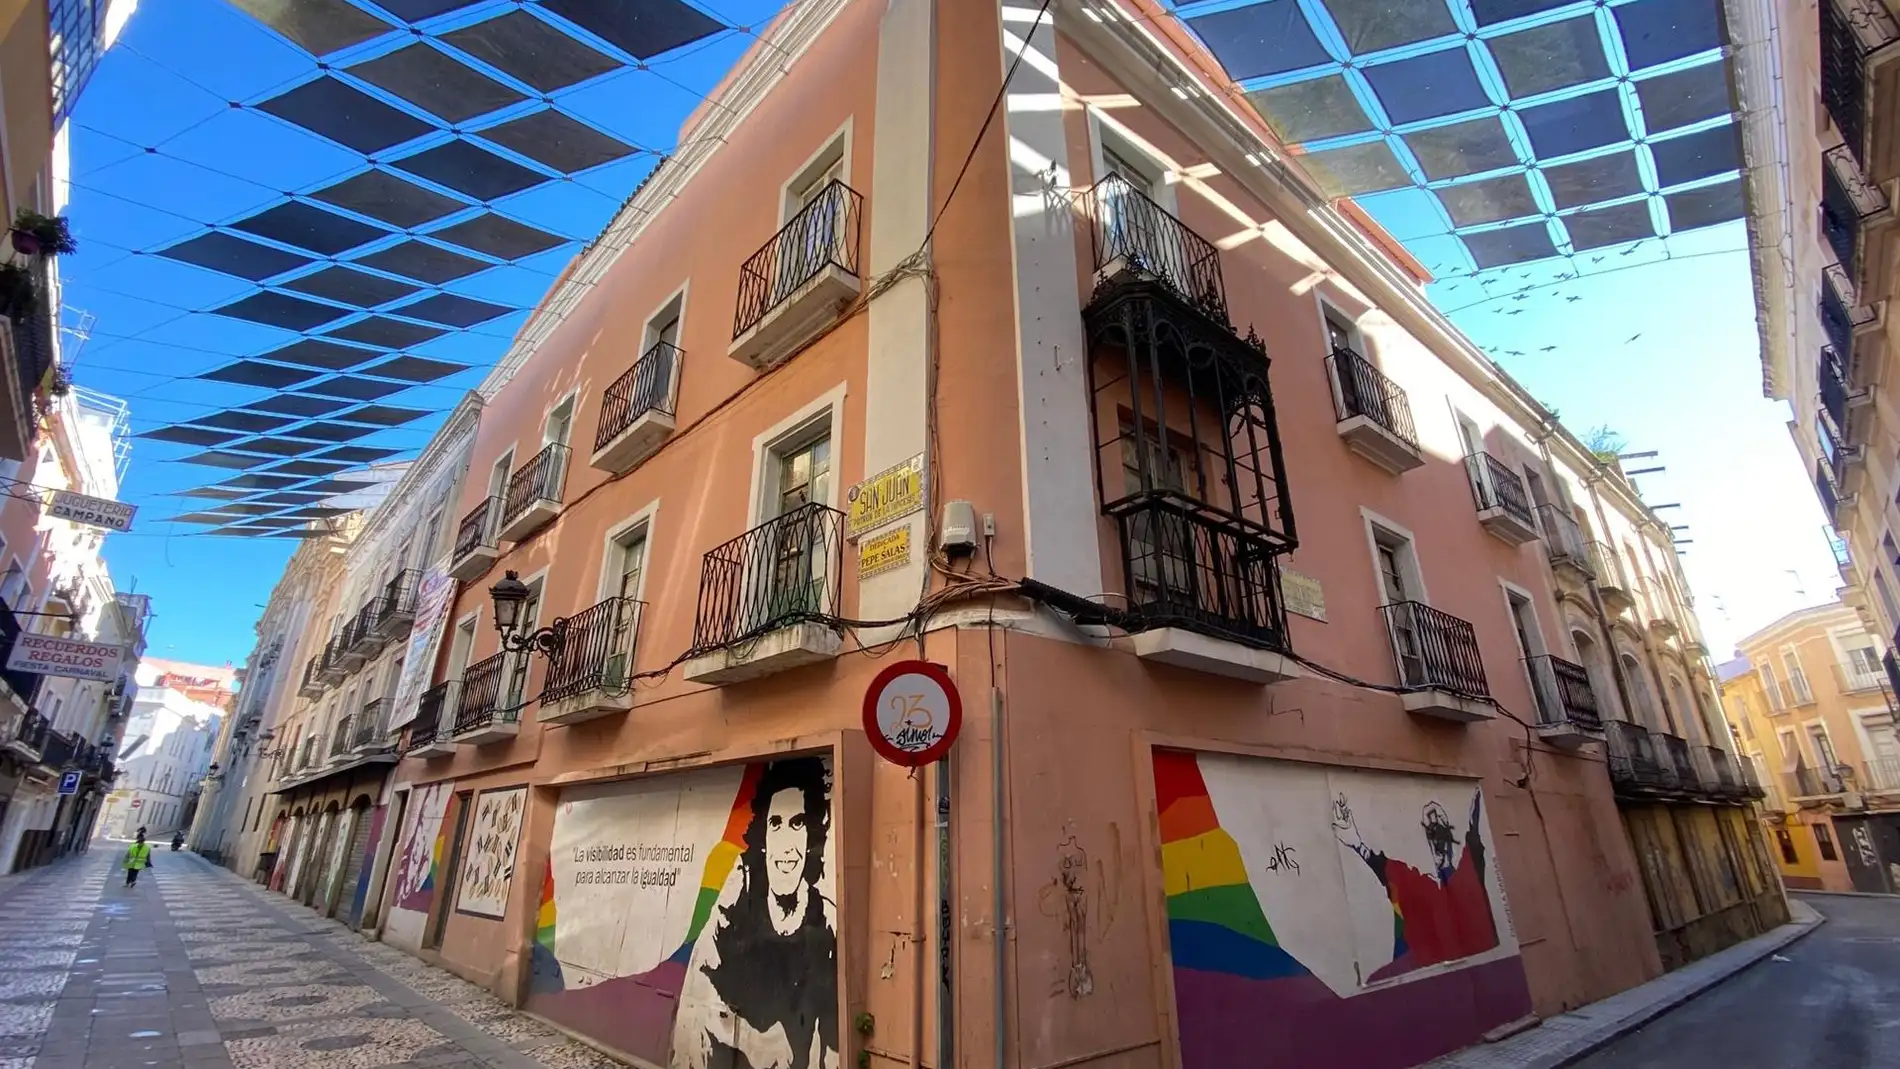 El PSOE de Badajoz pide una reunión al alcalde de Badajoz para analizar proyectos como la compra del conventual concepcionista